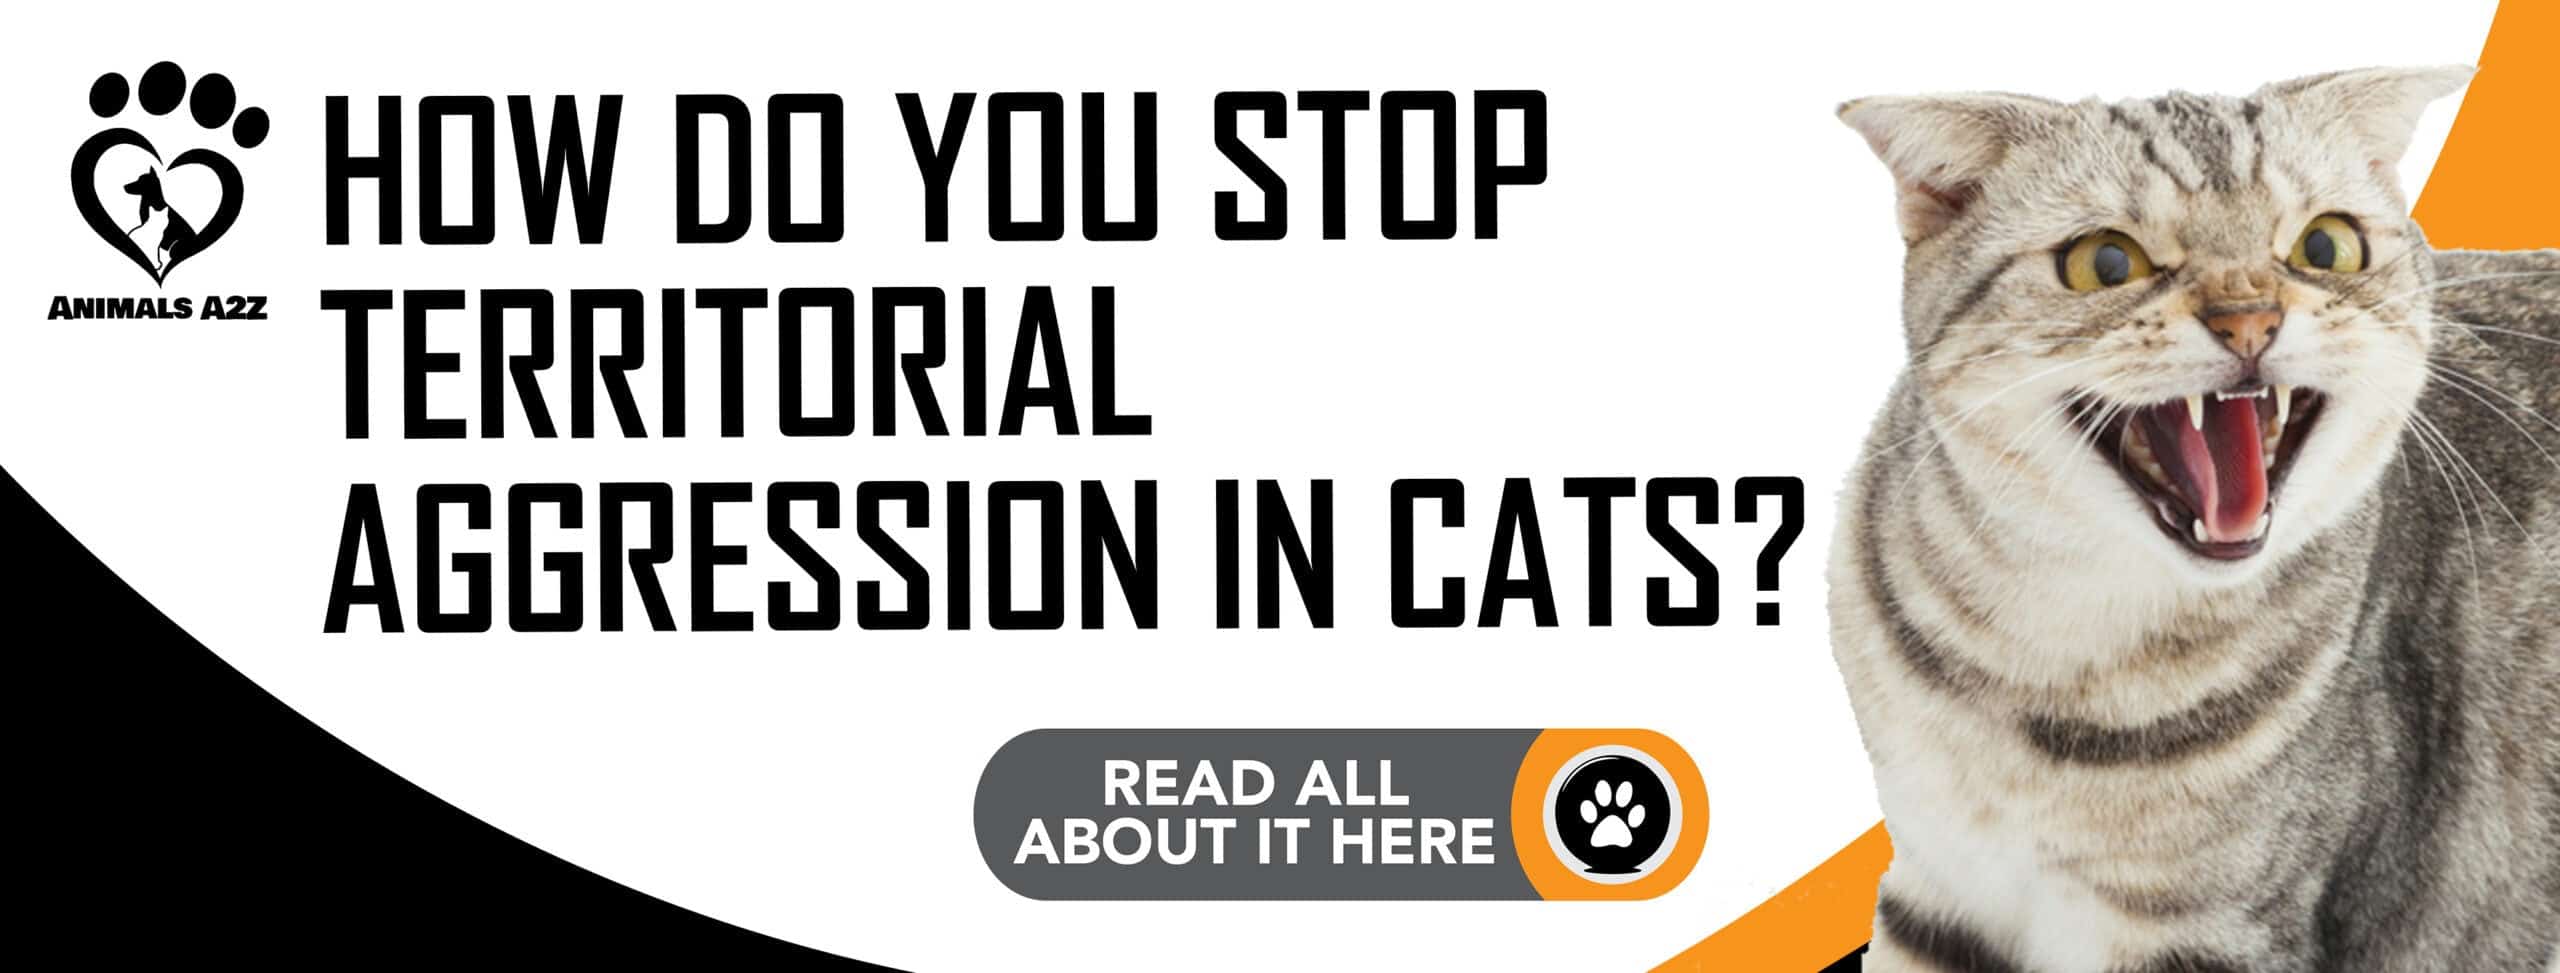 Hvordan stopper man territorial aggression hos katte?